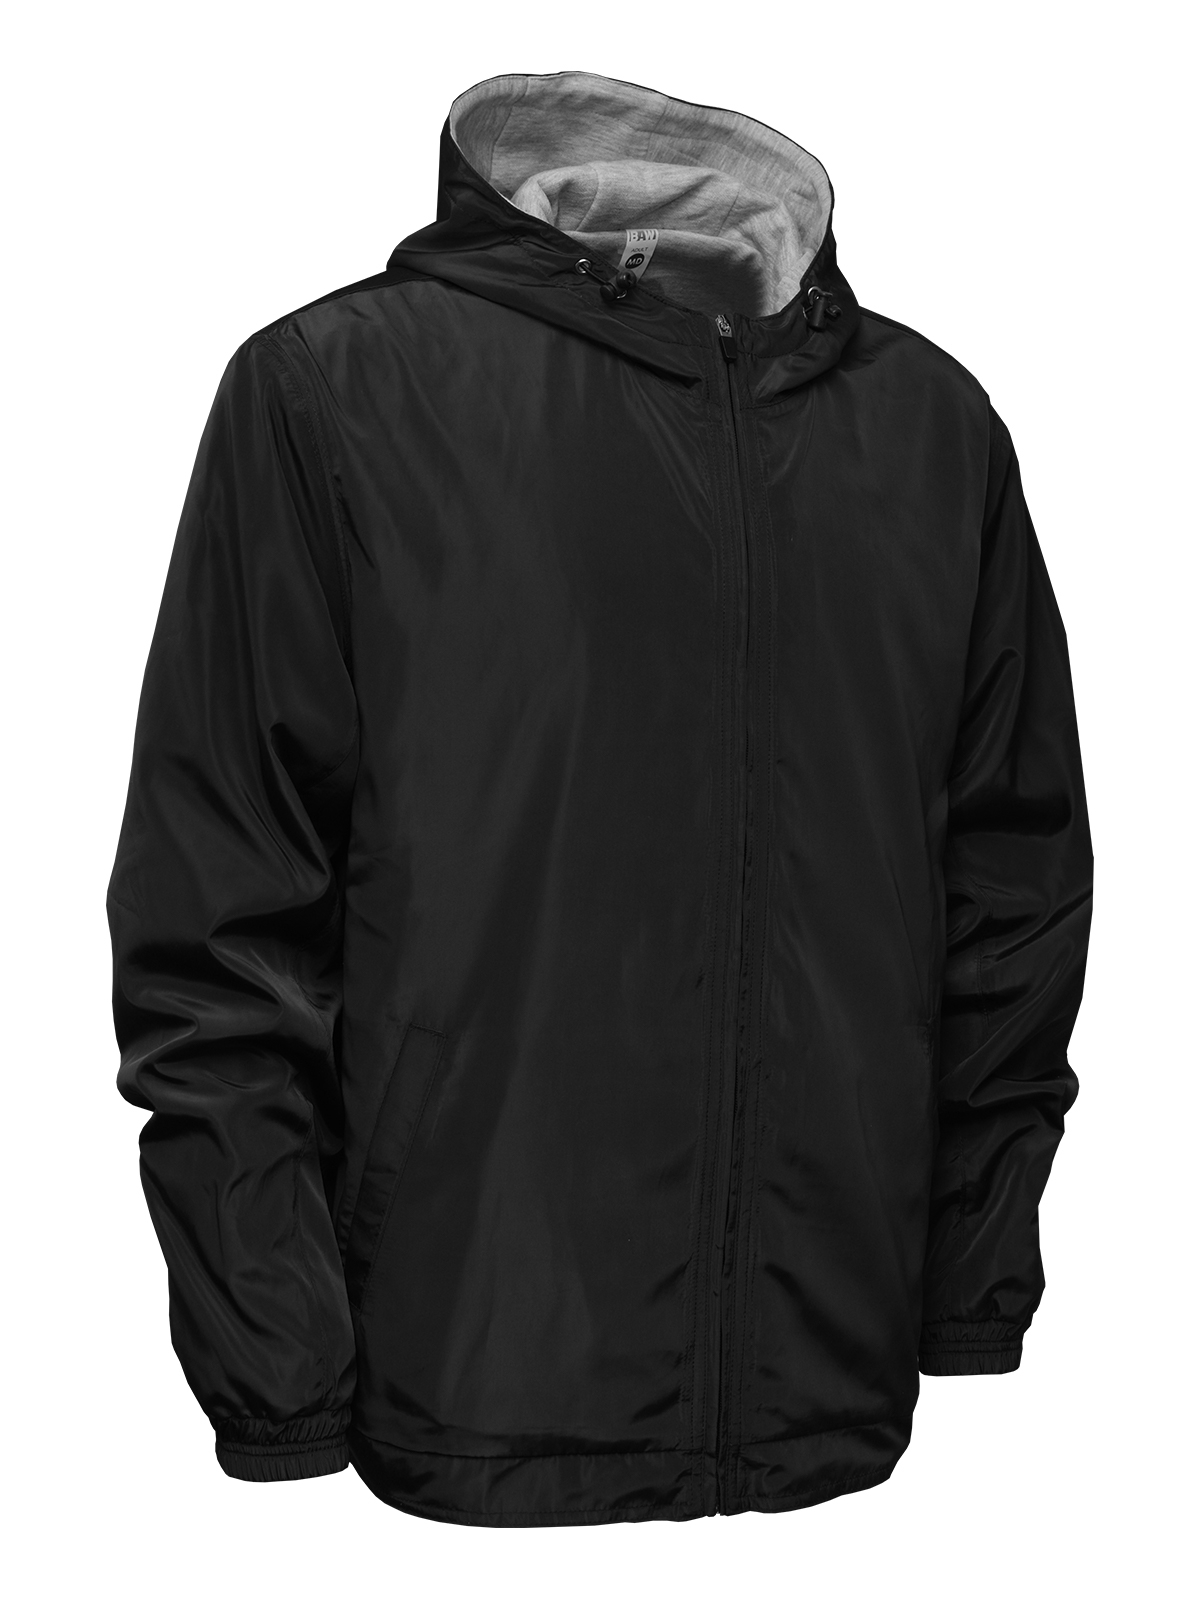 BAW Athletic Wear C9000 - Adult Coach Jacket $35.96